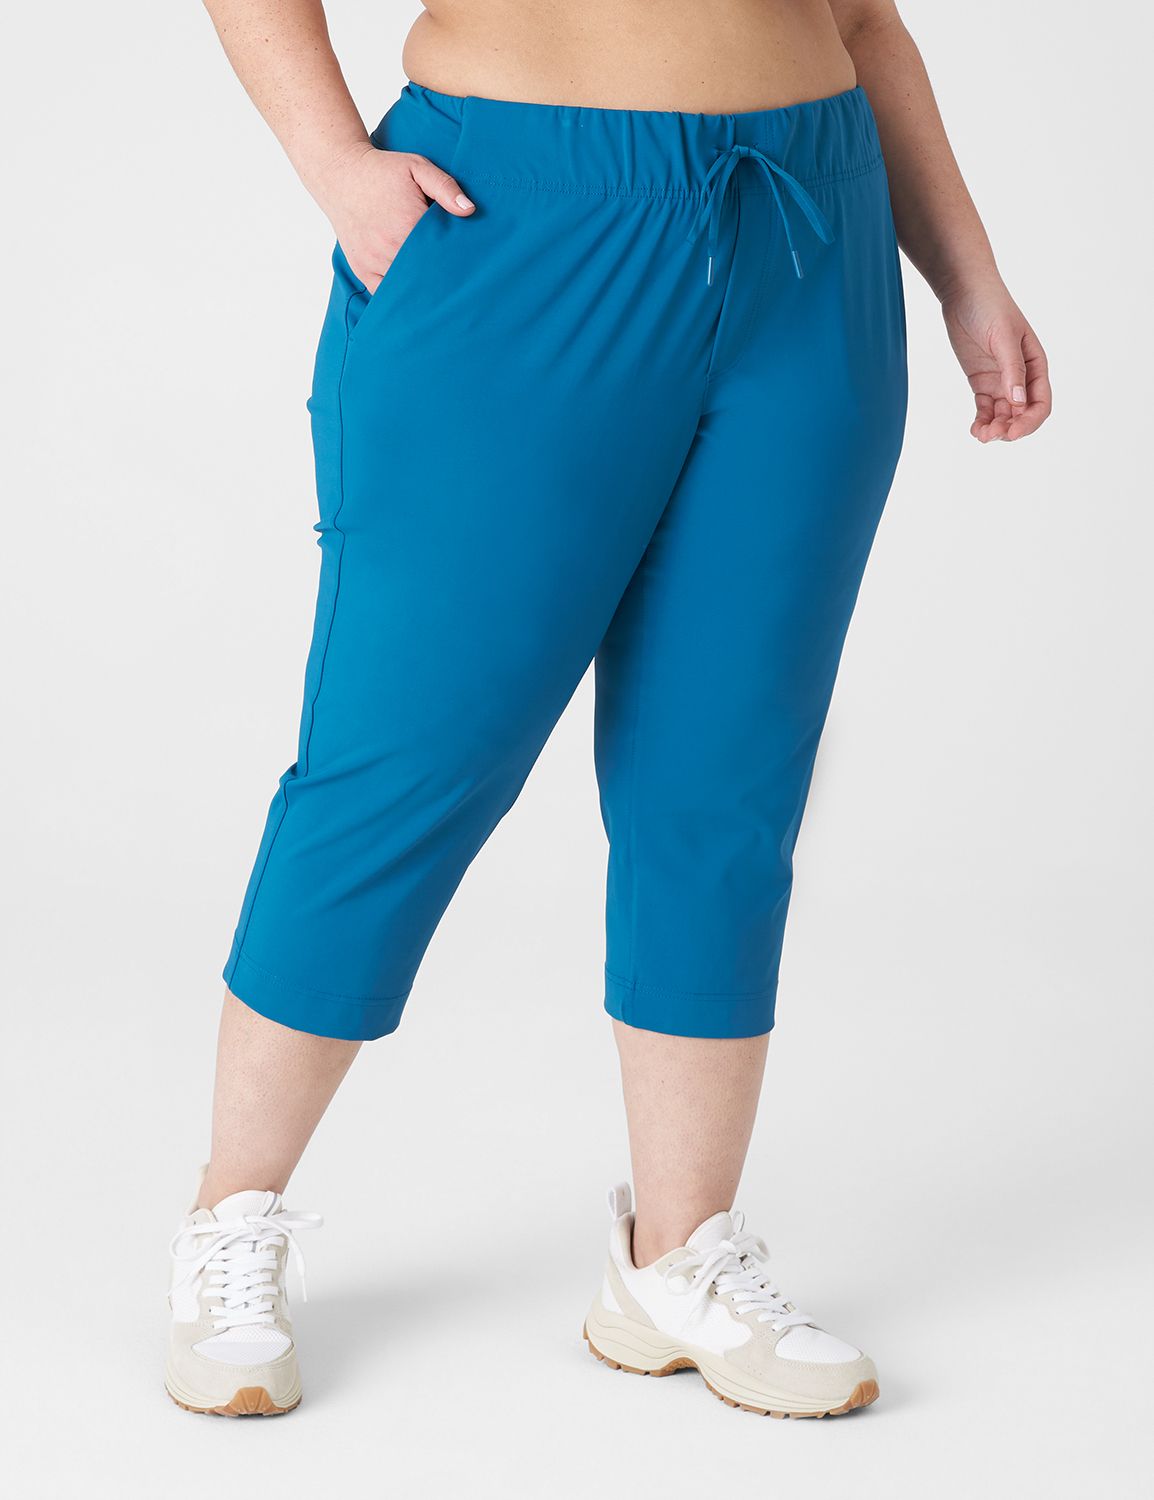 Nike Women's Green White Stripe Cropped Capri Track Pants Size L (B-31)